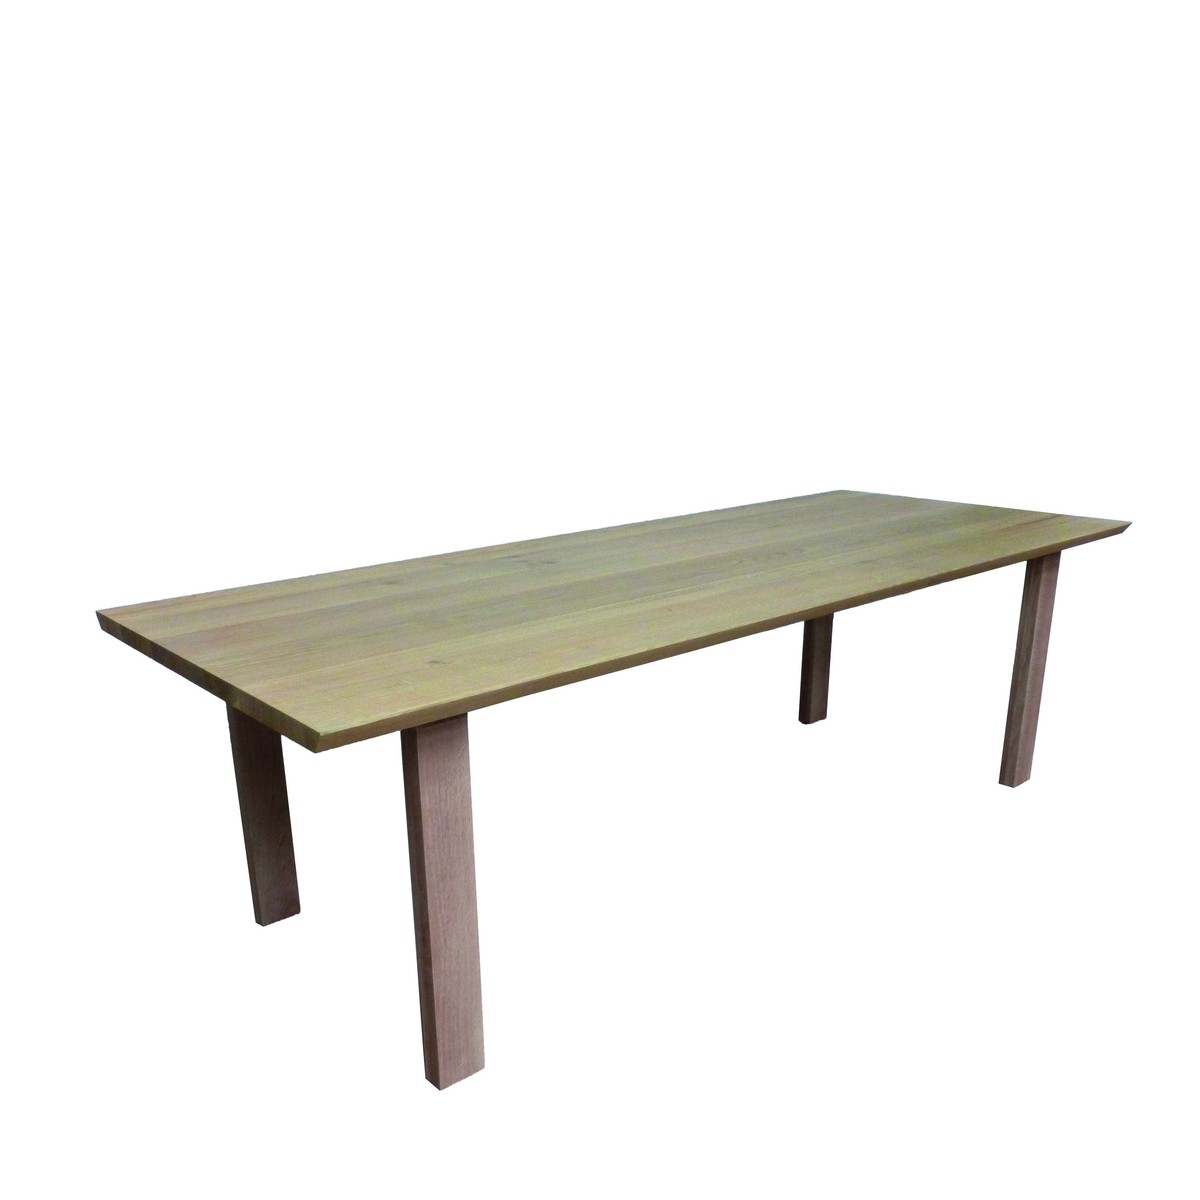   Table de bar Roco Seven rectangulaire  160x100x110cm